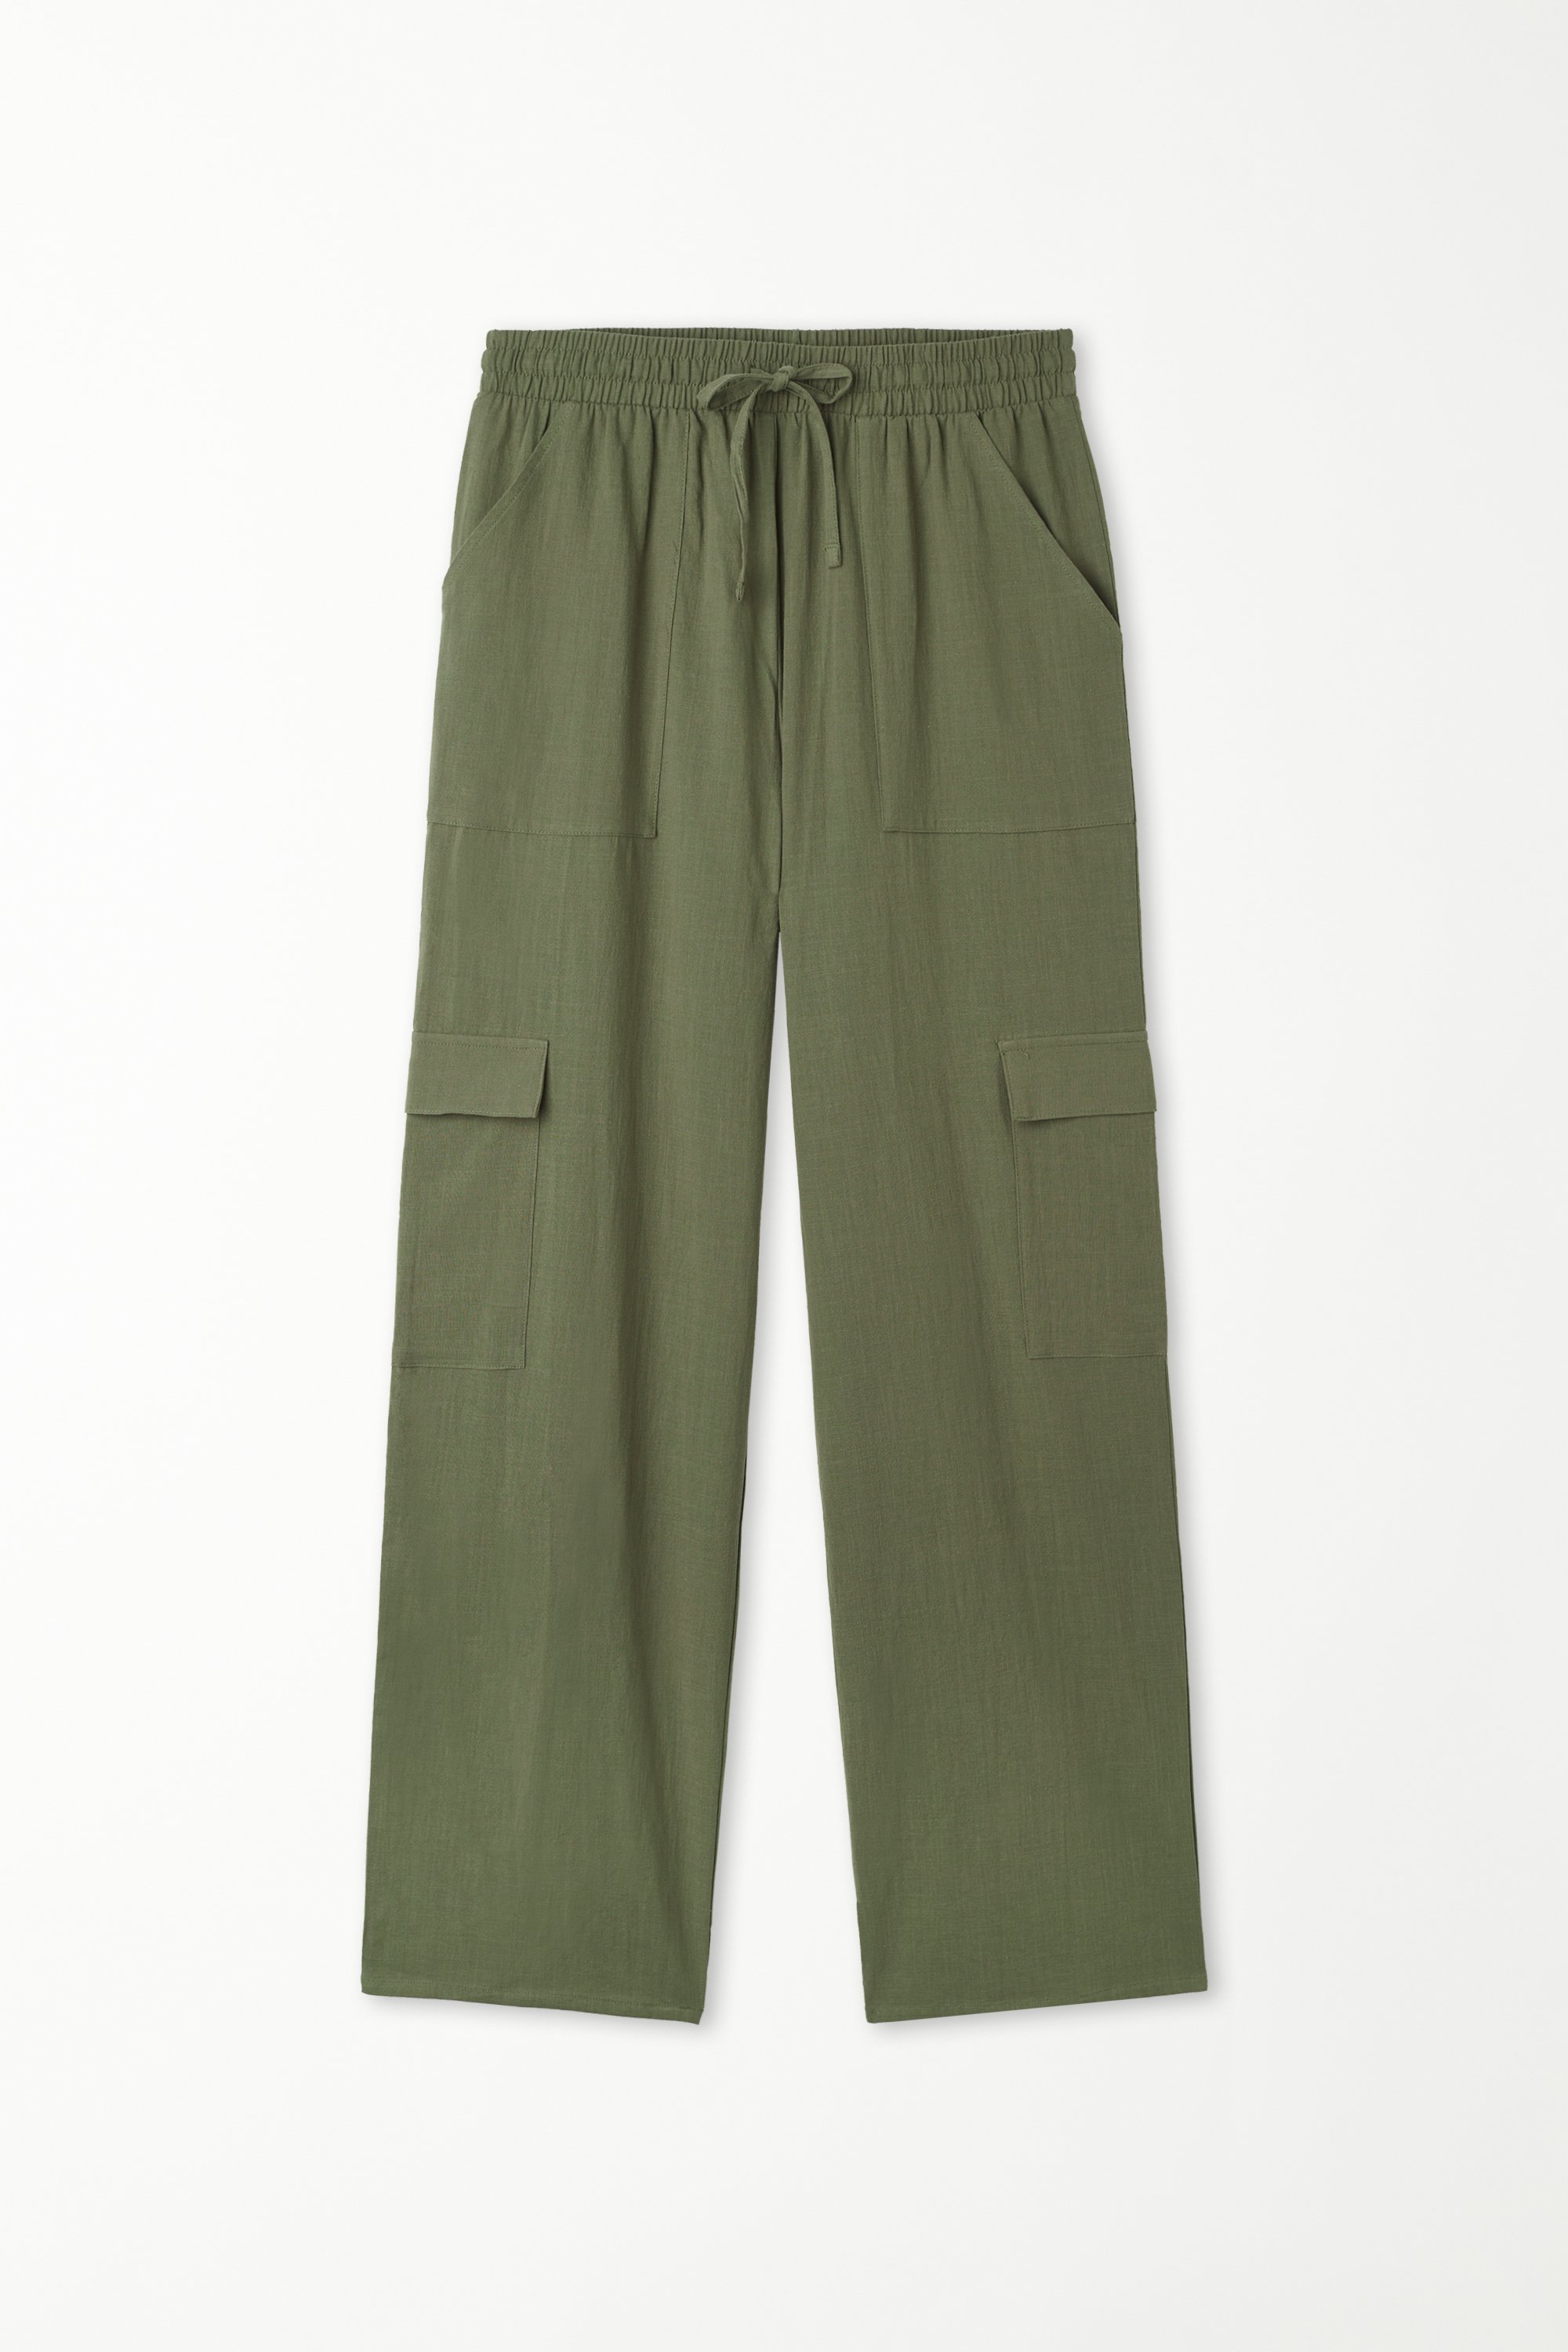 Full Length Cargo Pocket Pants in 100% Super Light Cotton